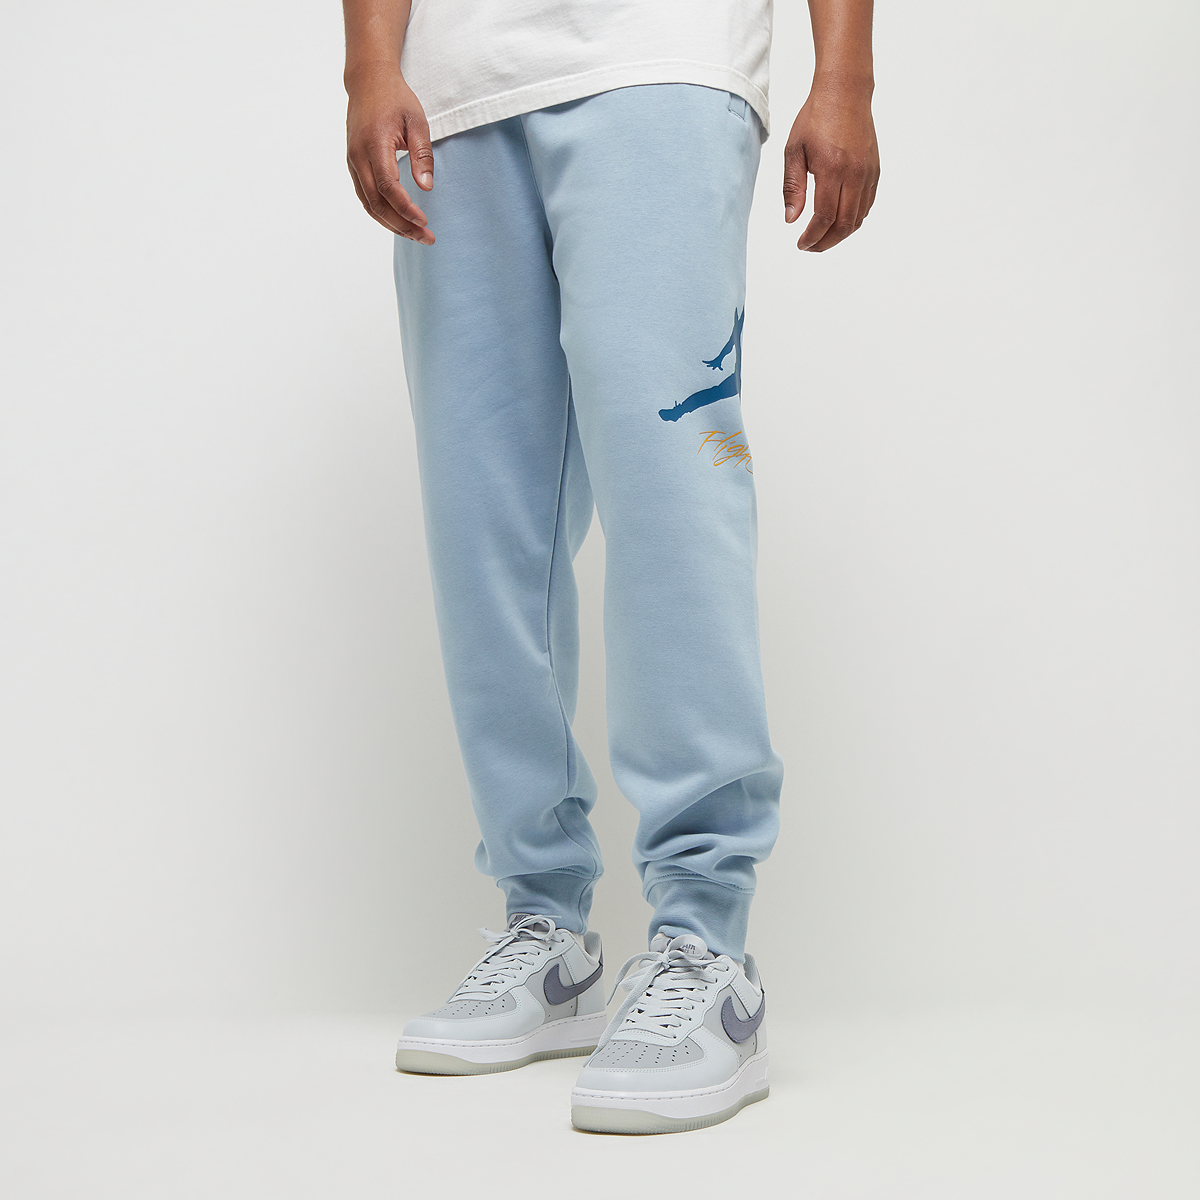 Jordan Essentials Fleece Baseline Pants Trainingsbroeken Heren blue grey industrial blue maat: S beschikbare maaten:S M L XL